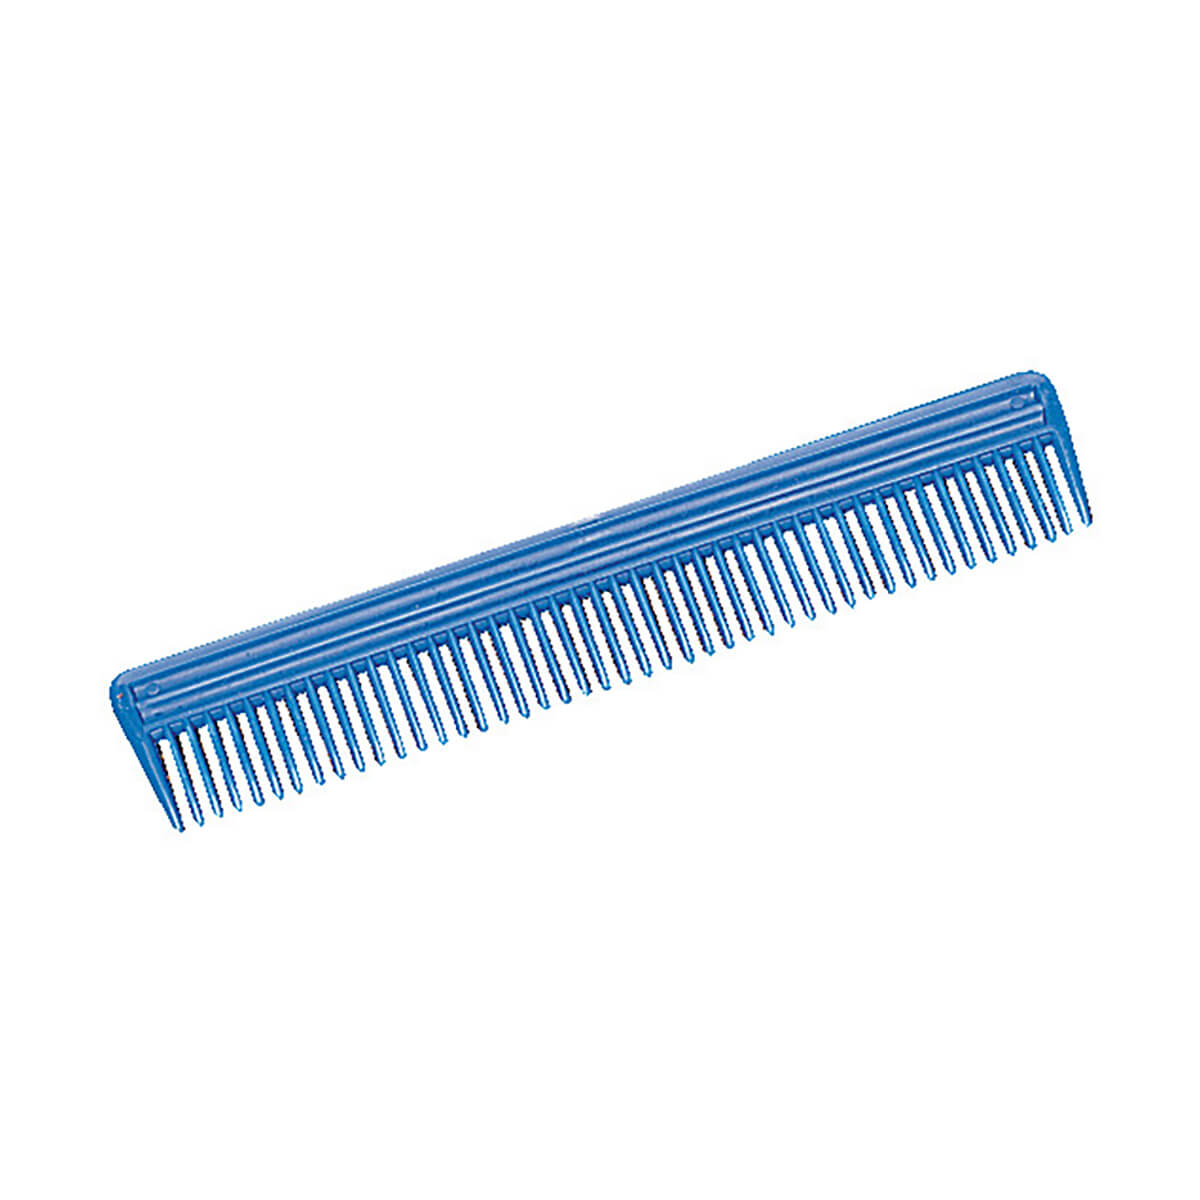 Plastic Animal Comb Blue - 9-in